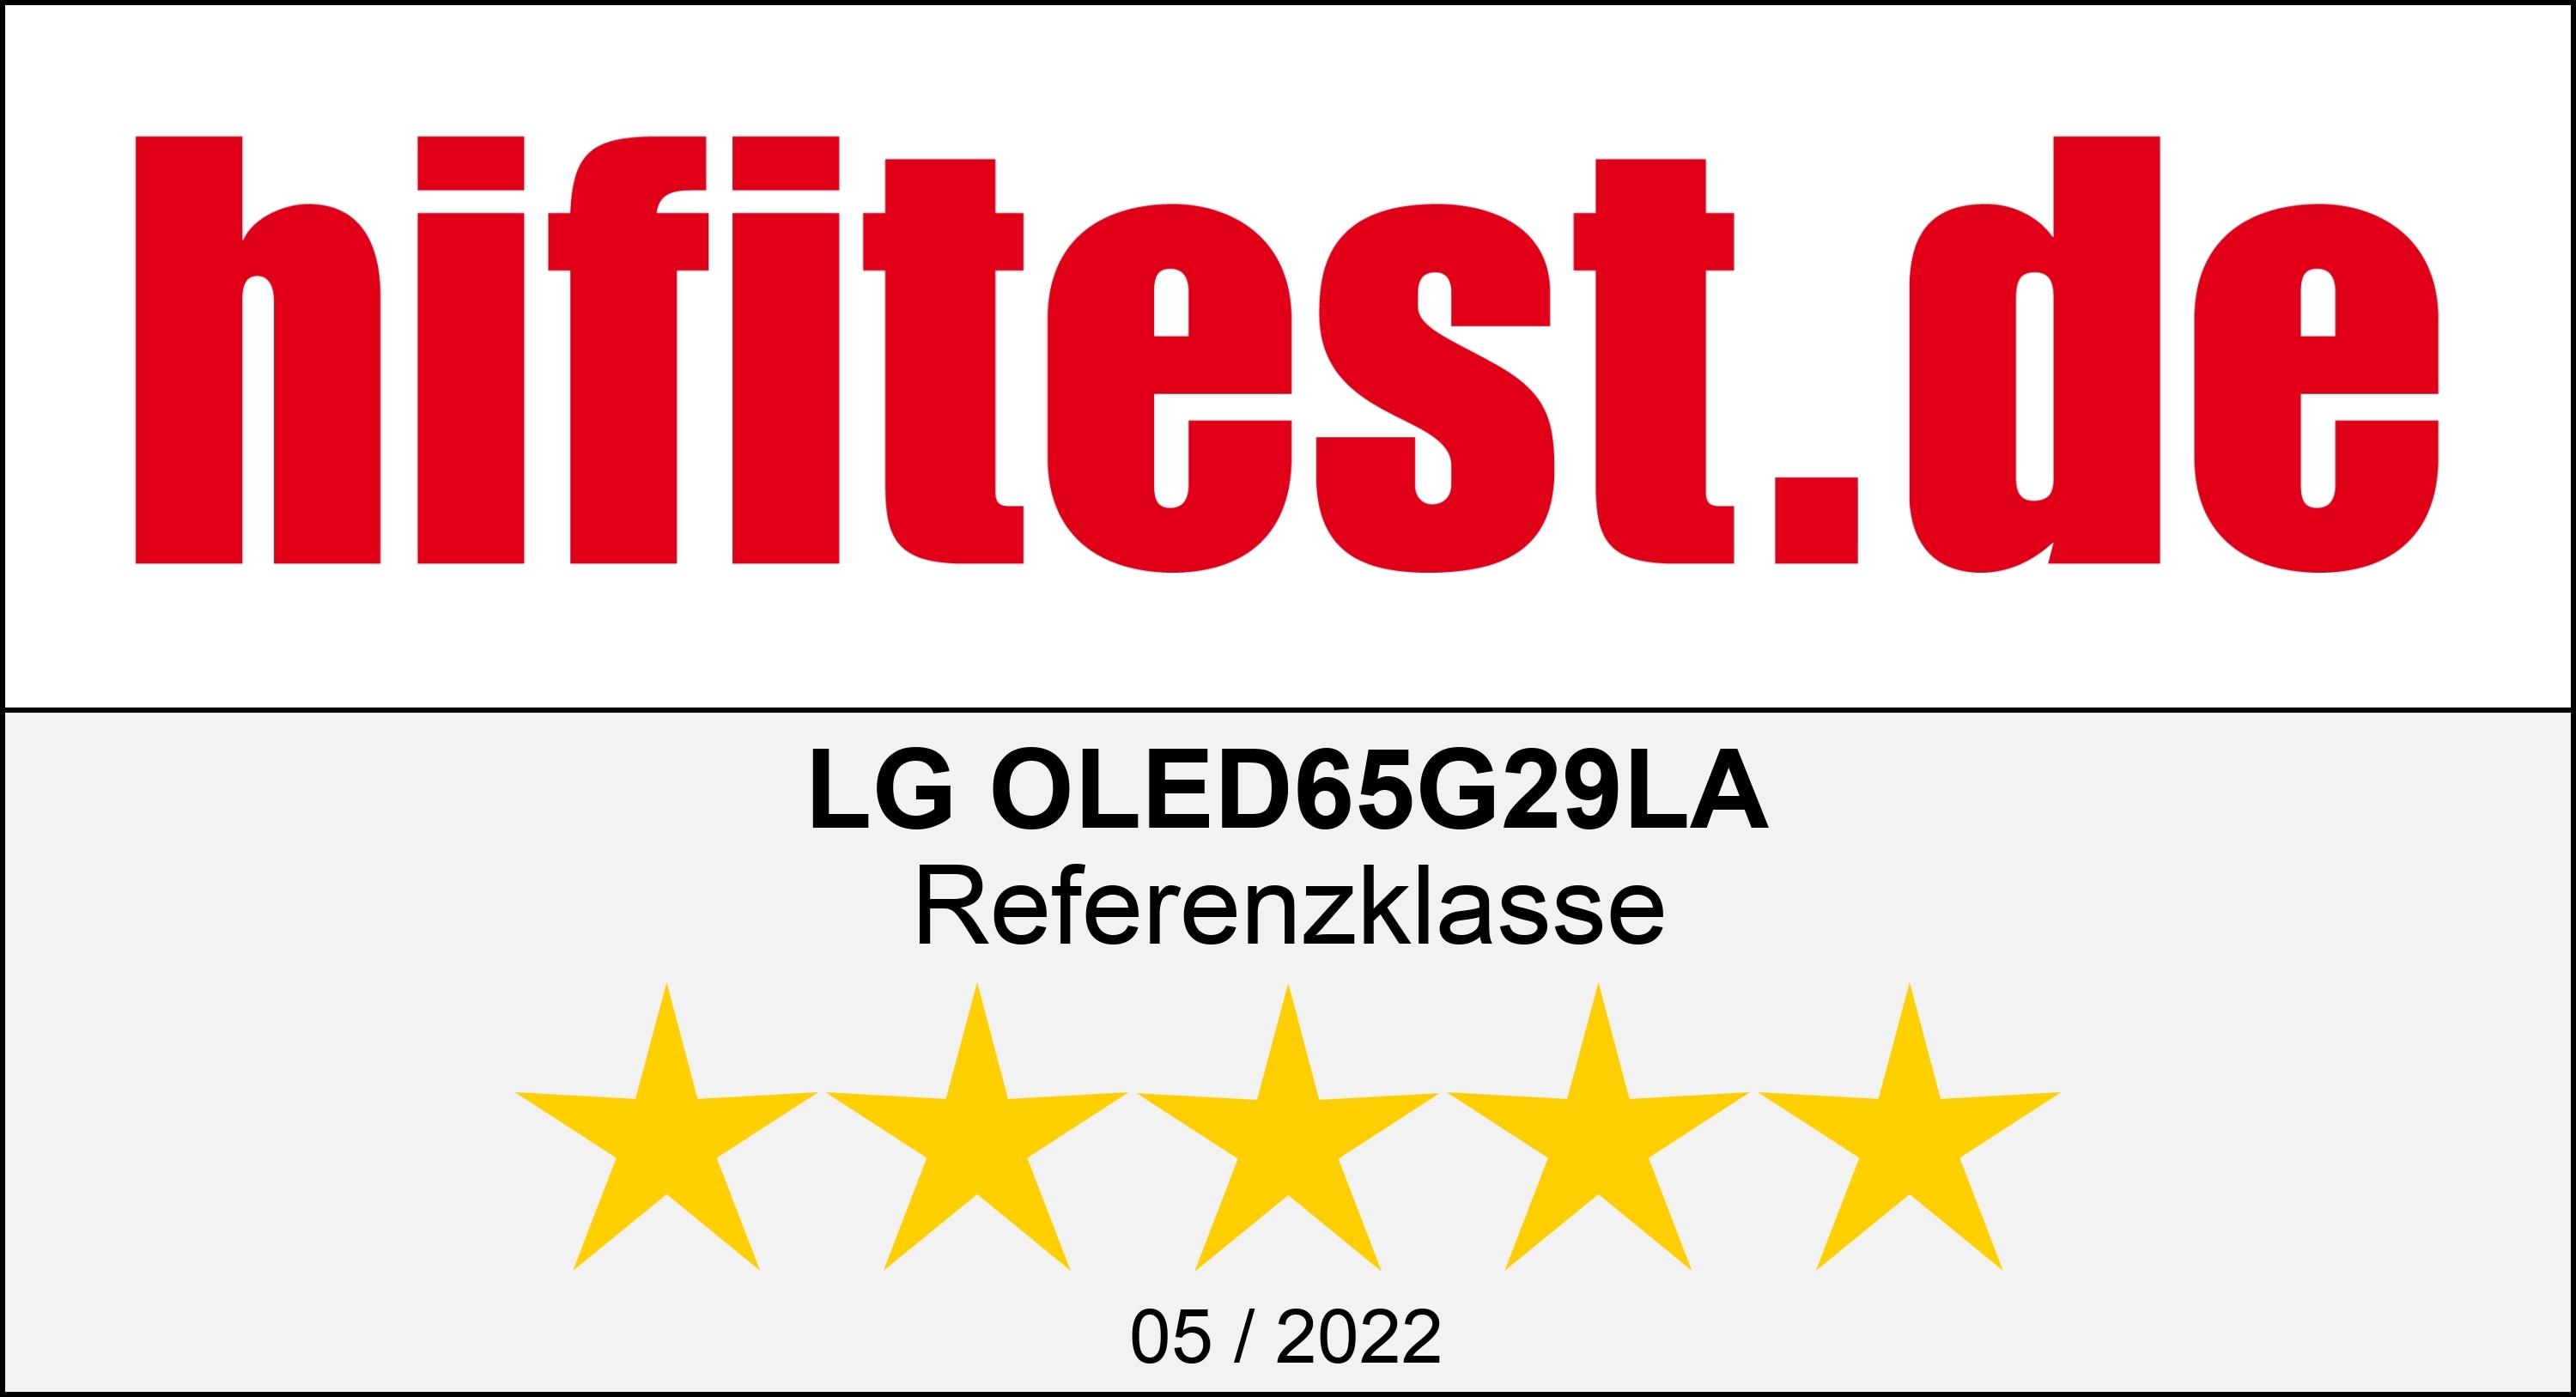 Logo der Hifitest.de